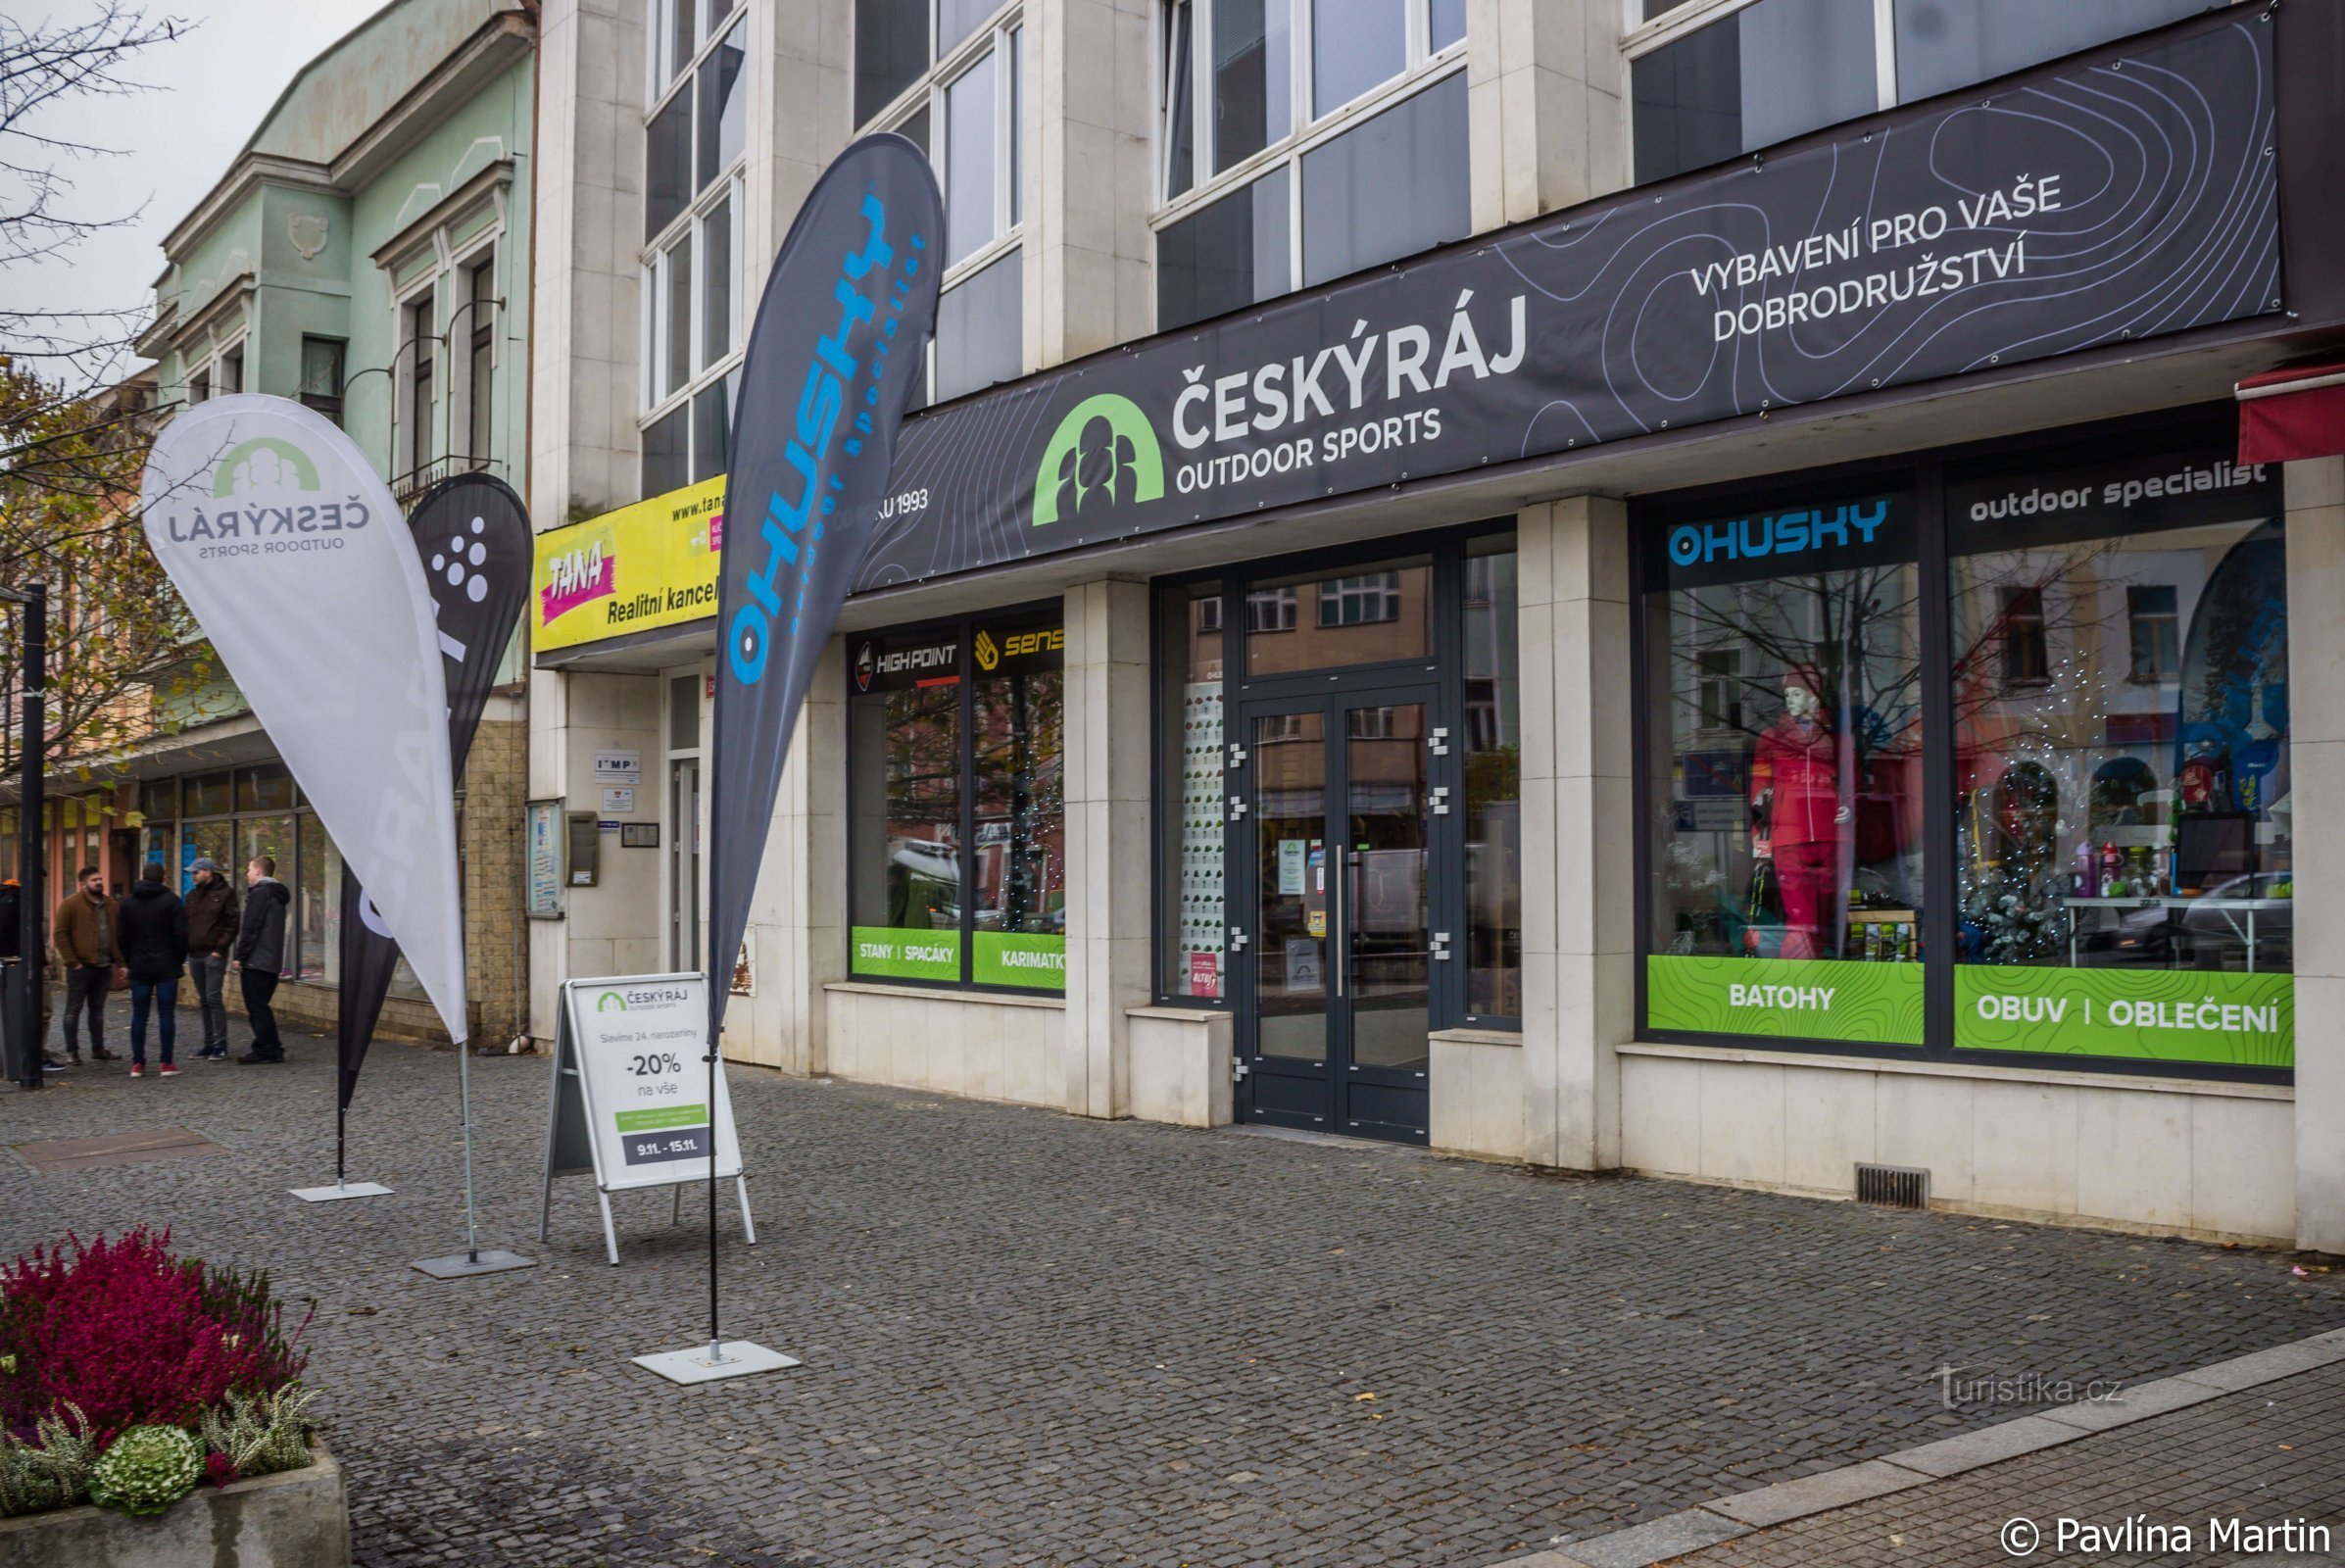 A loja ao ar livre Český raj está comemorando 25 anos e você também pode com 20% de desconto em tudo